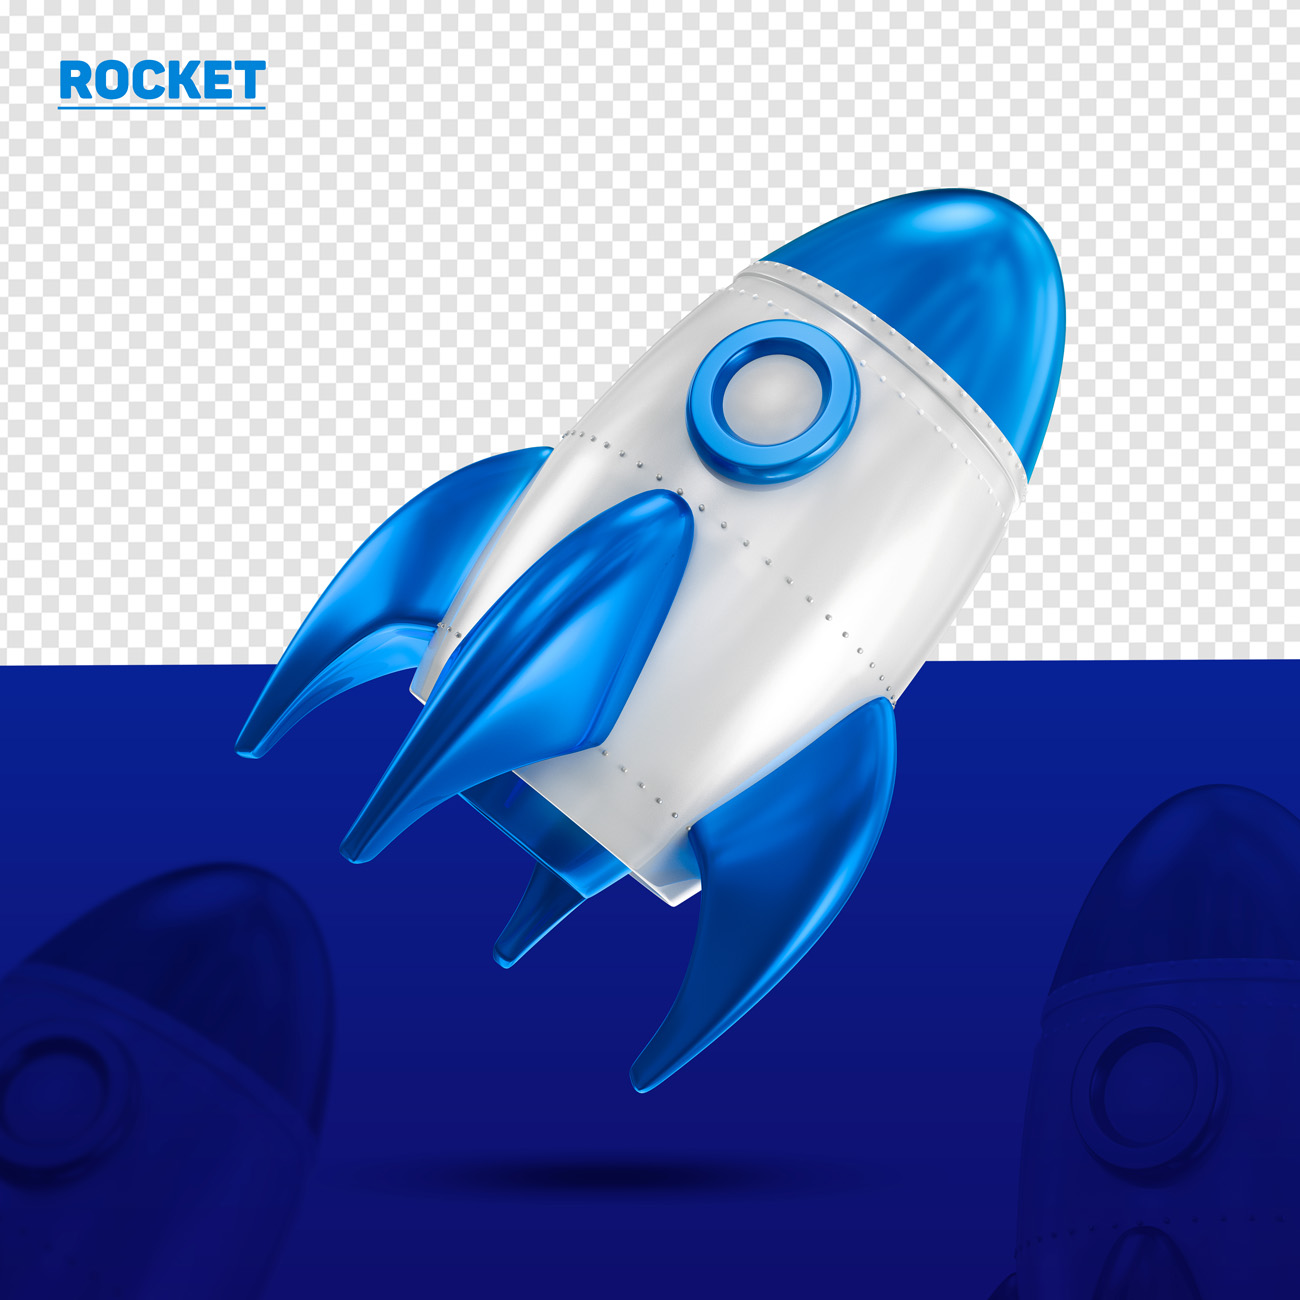 三维立体火箭图标素材 Rocket blue 3d left